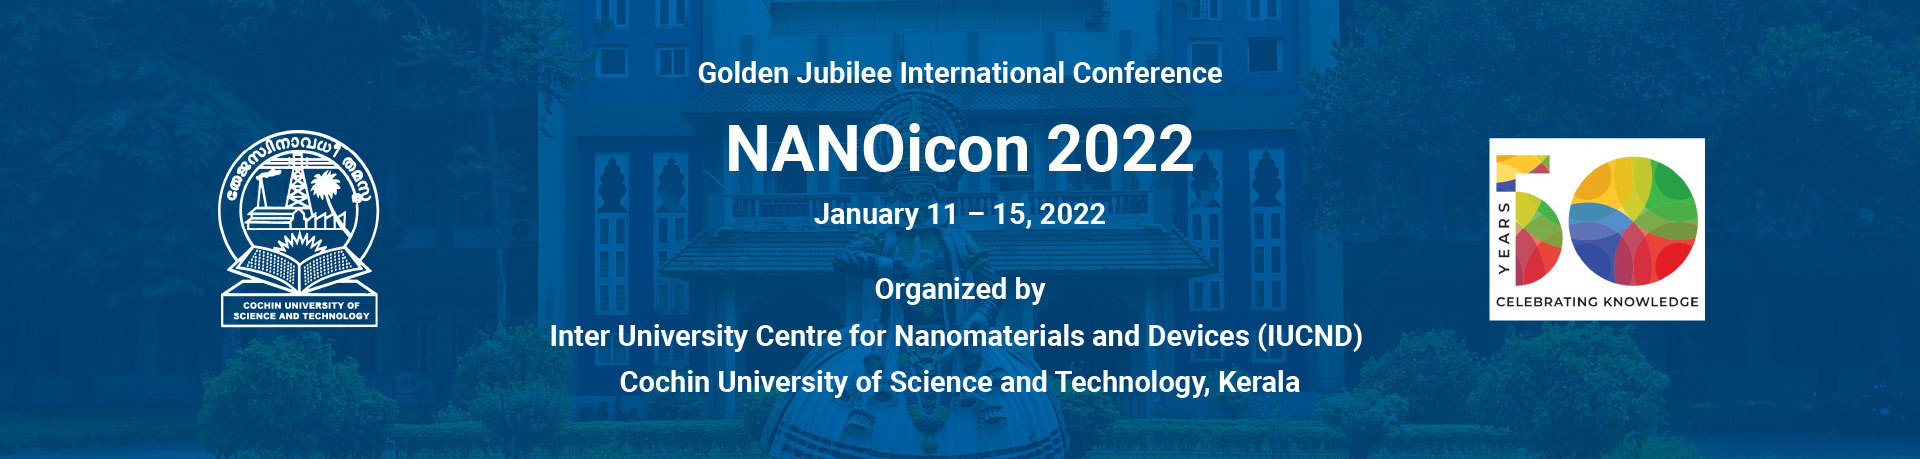 Nanoicon 2022